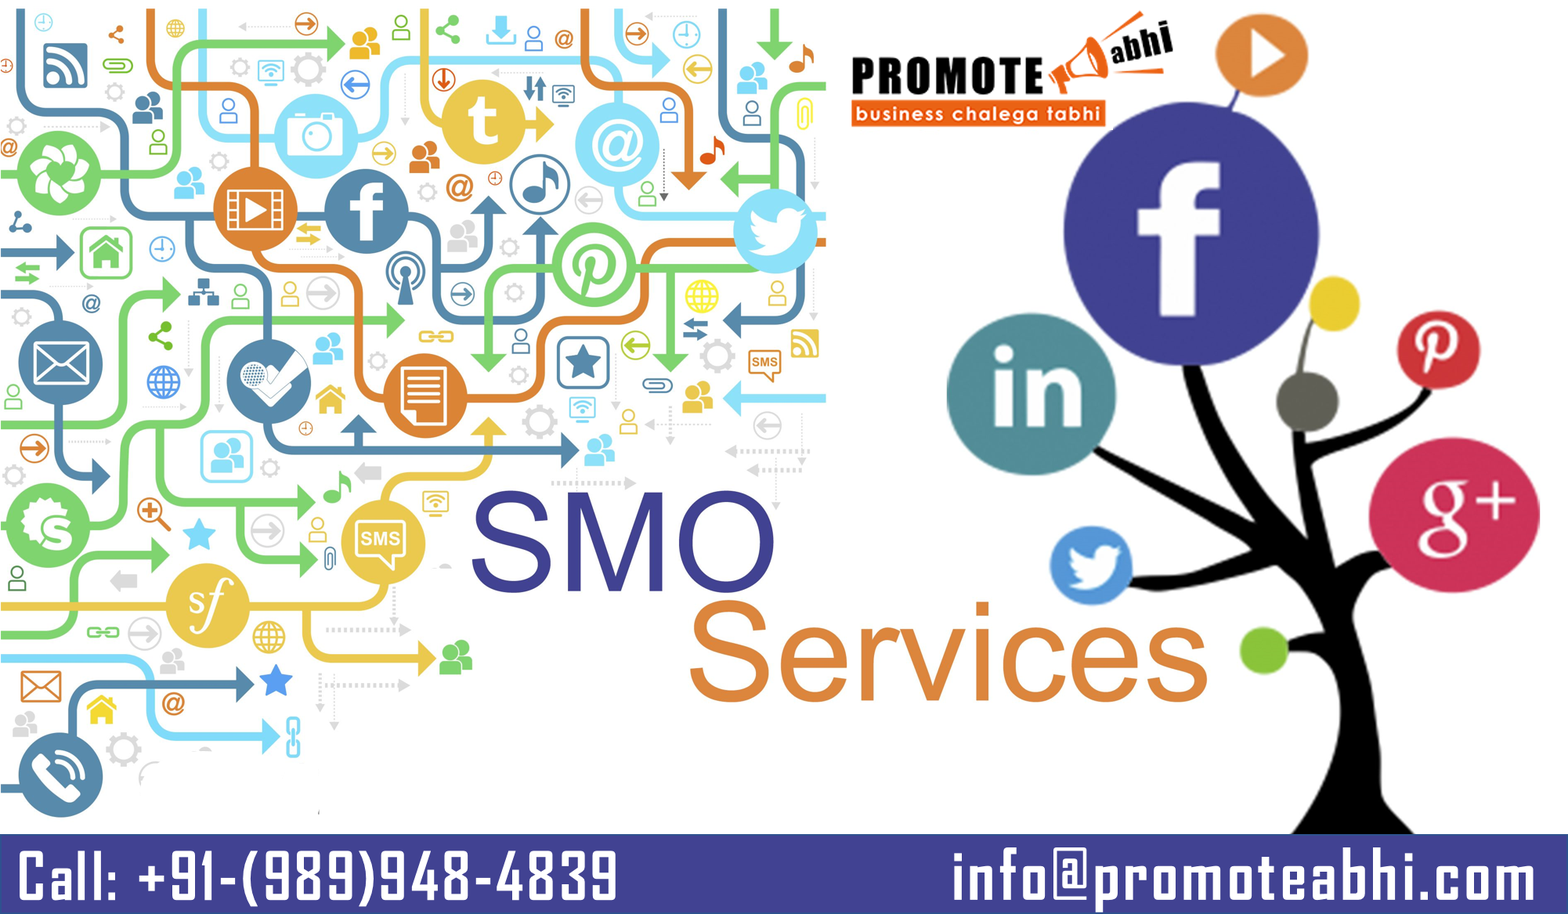 social media marketing company in india Copy